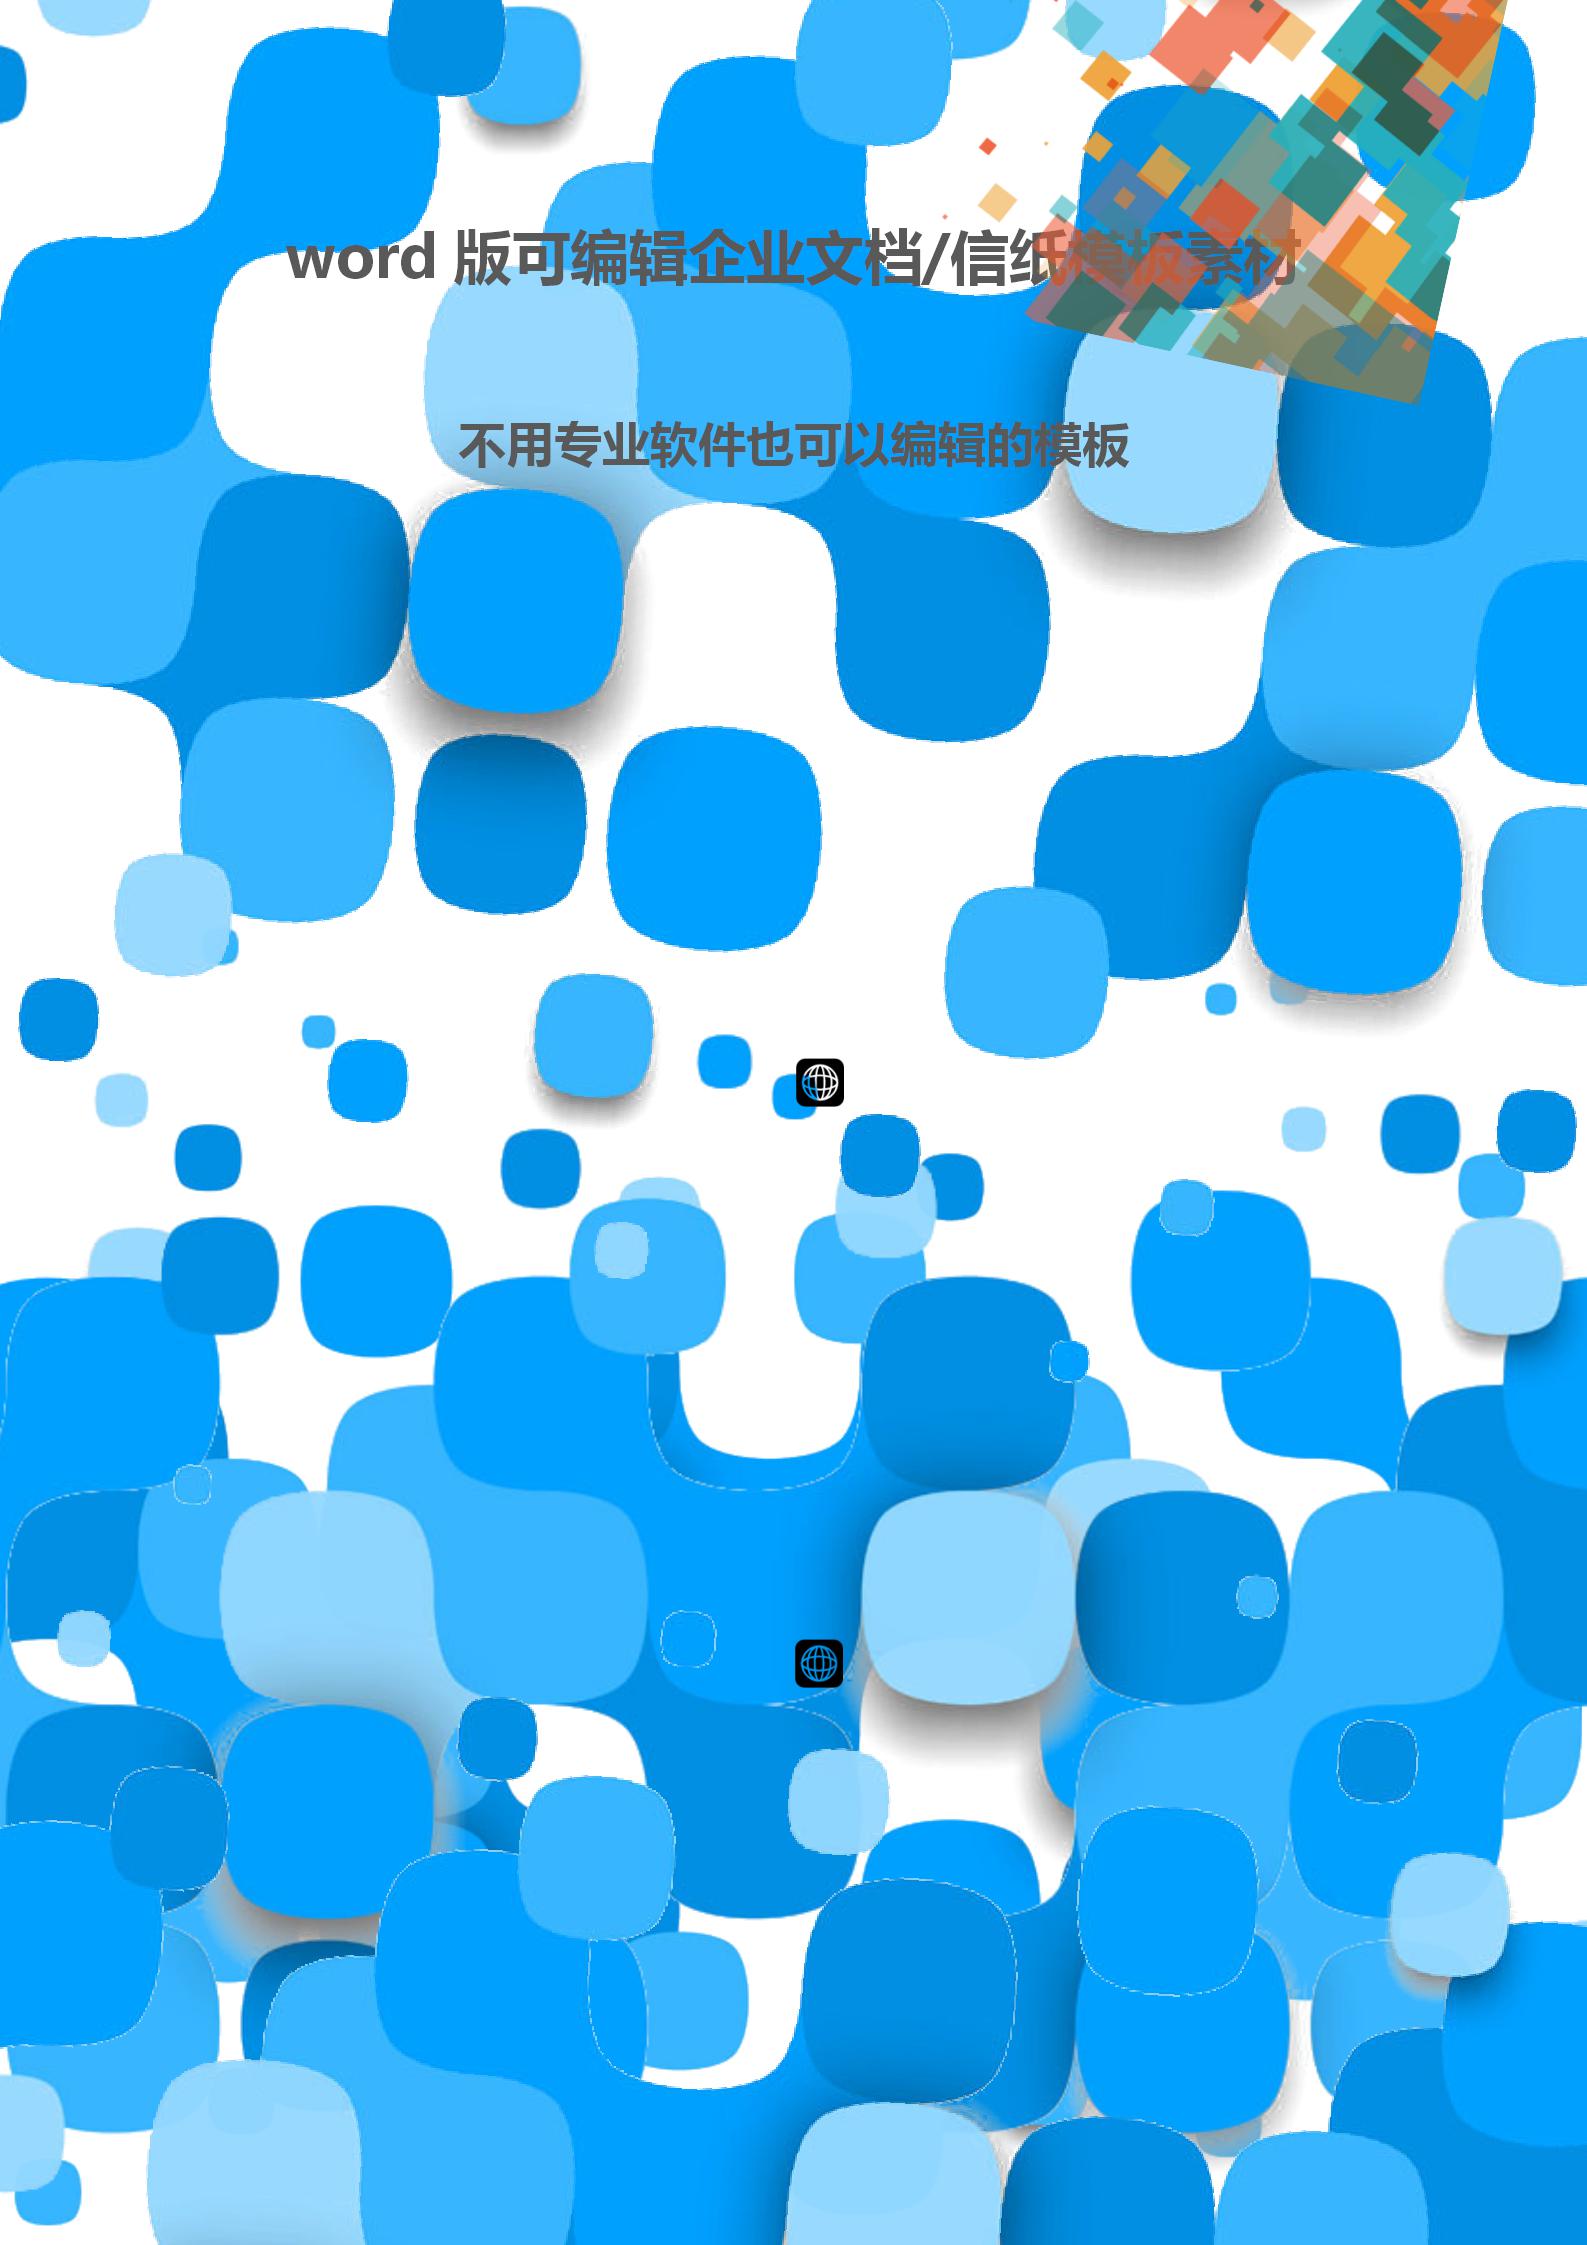 蓝色圆角矩形文档背景word模板-1